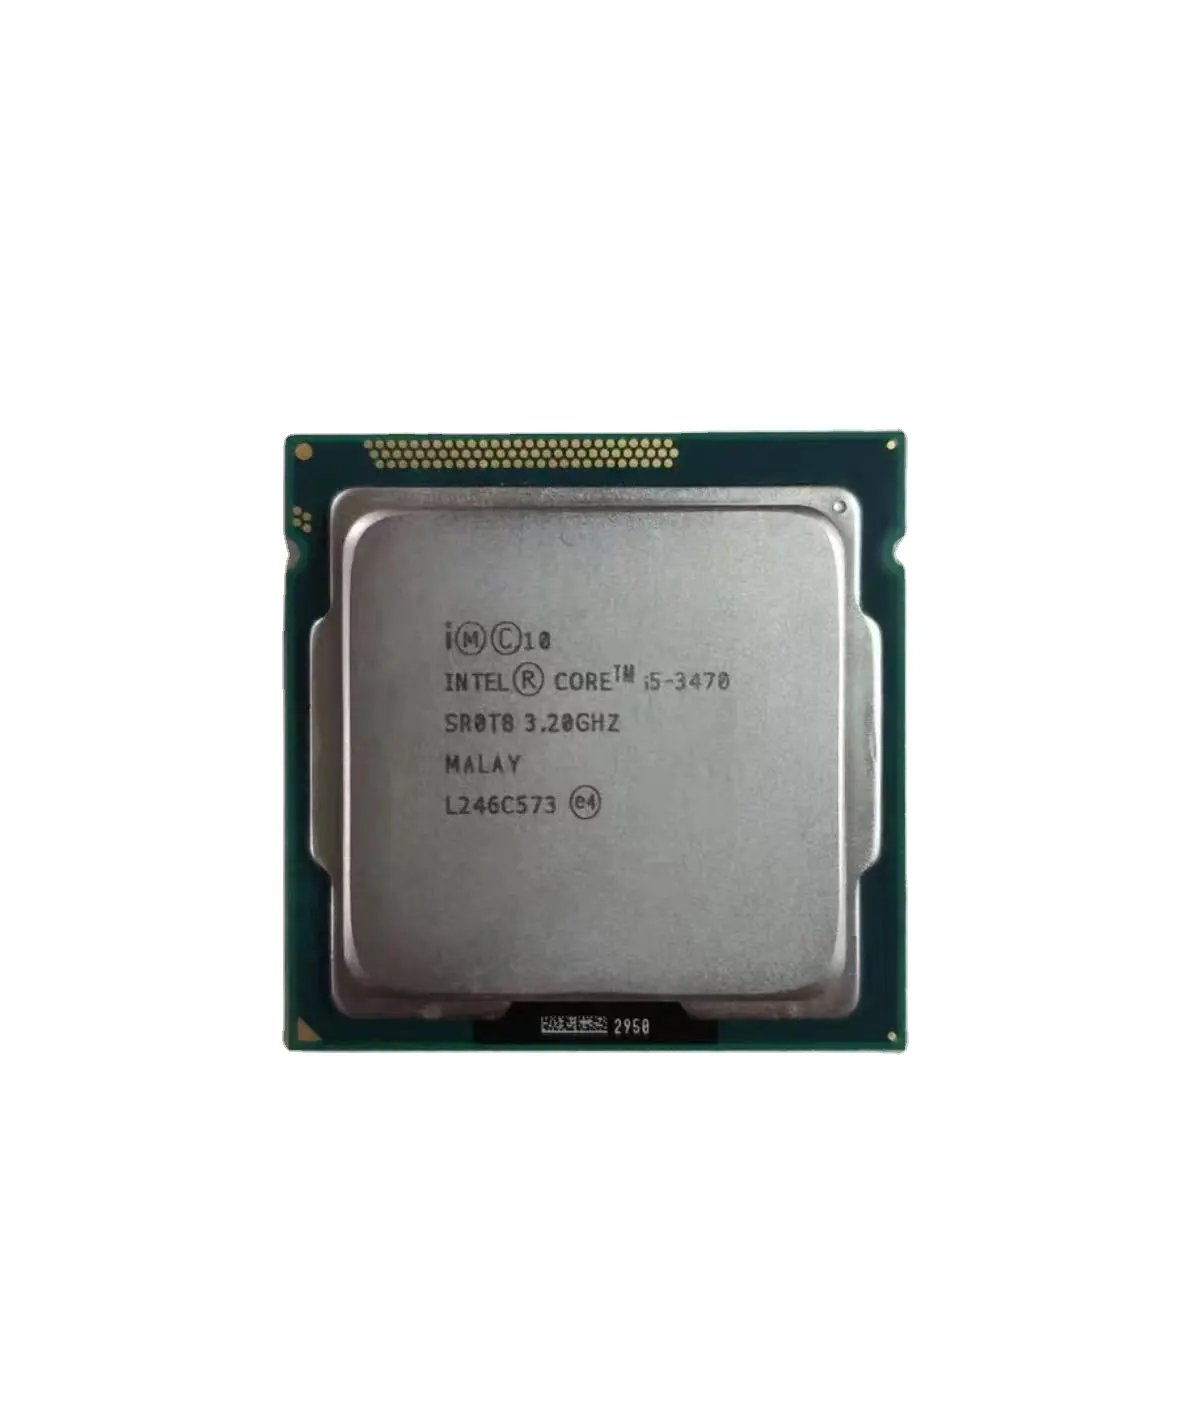 Soket Intel Core i5 1155 3470 GHz 3.2 MHz, stok prosesor Quad Core Desktop murah LGA 3400